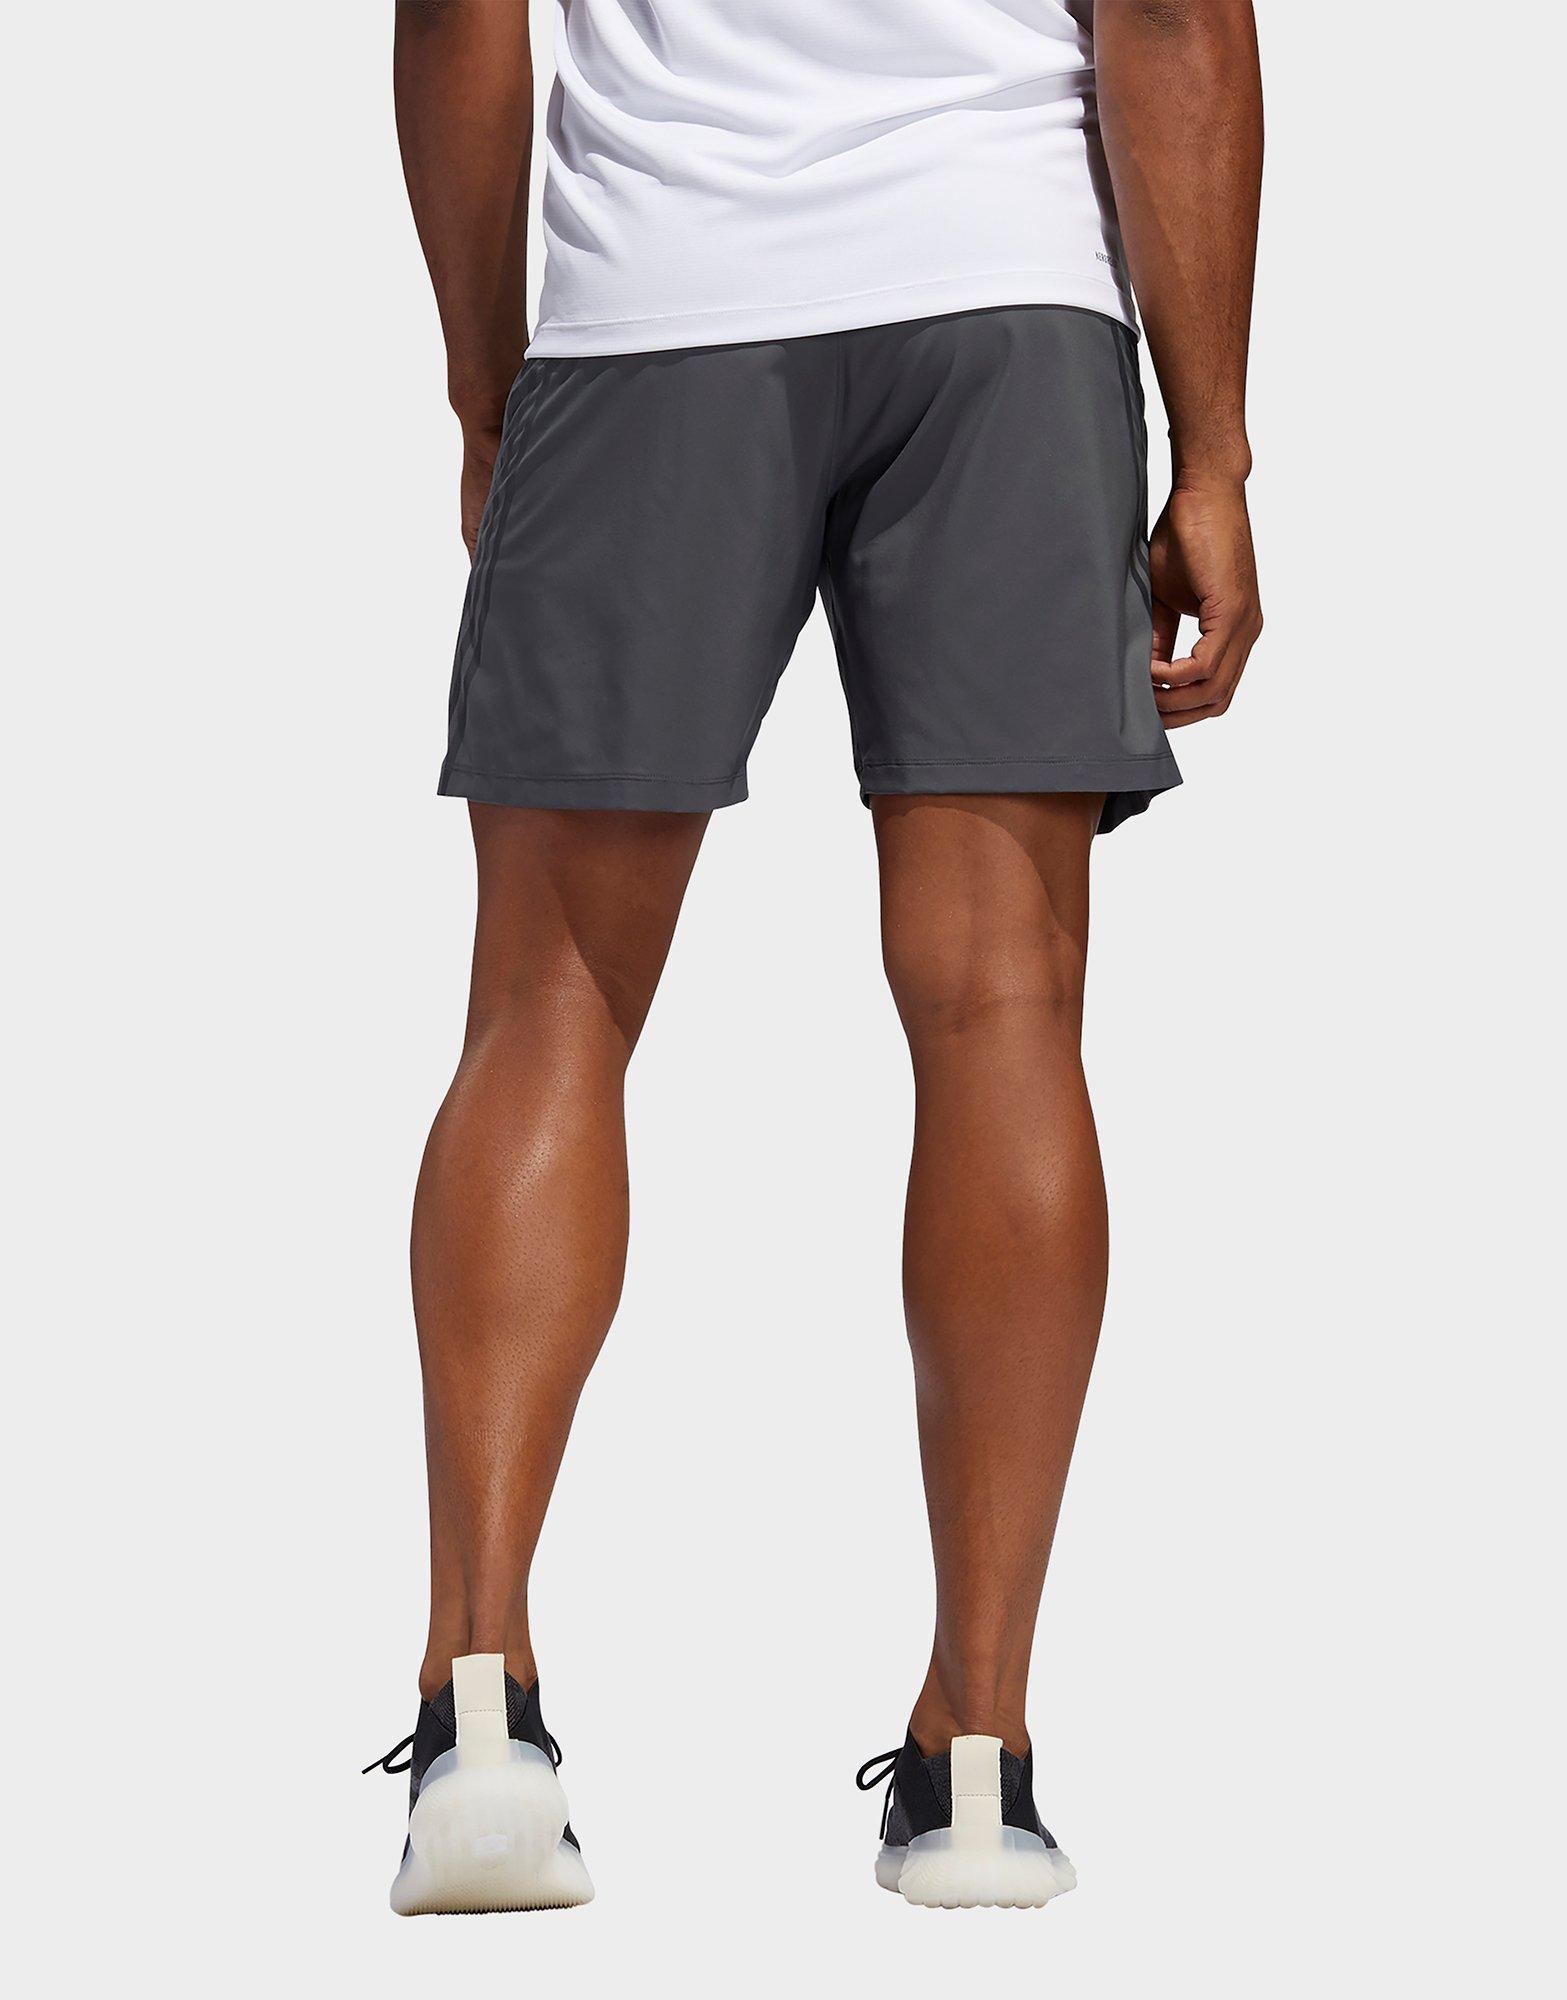 adidas 3 inch running shorts